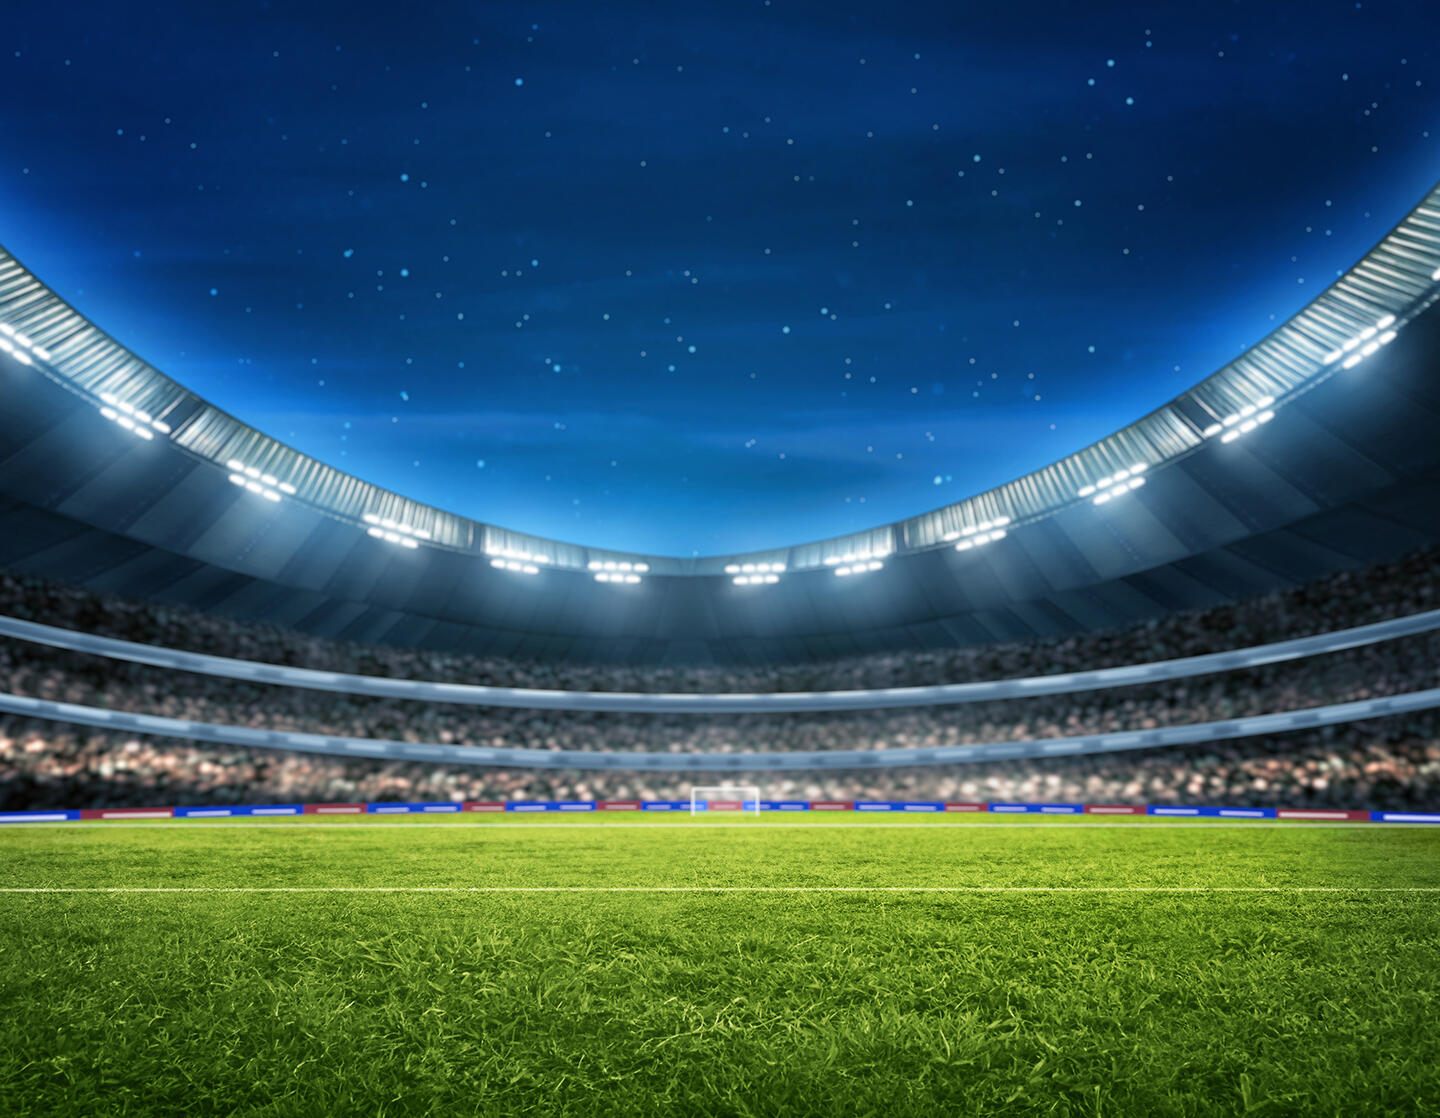 Stade de Bordeaux éclairé de nuit sous un ciel étoilé, avec une pelouse impeccable, suggérant une ambiance de match de soirée, à proximité de l'appart'hôtel Bordeaux, pratique pour les visiteurs cherchant un hébergement proche de l'événement sportif.